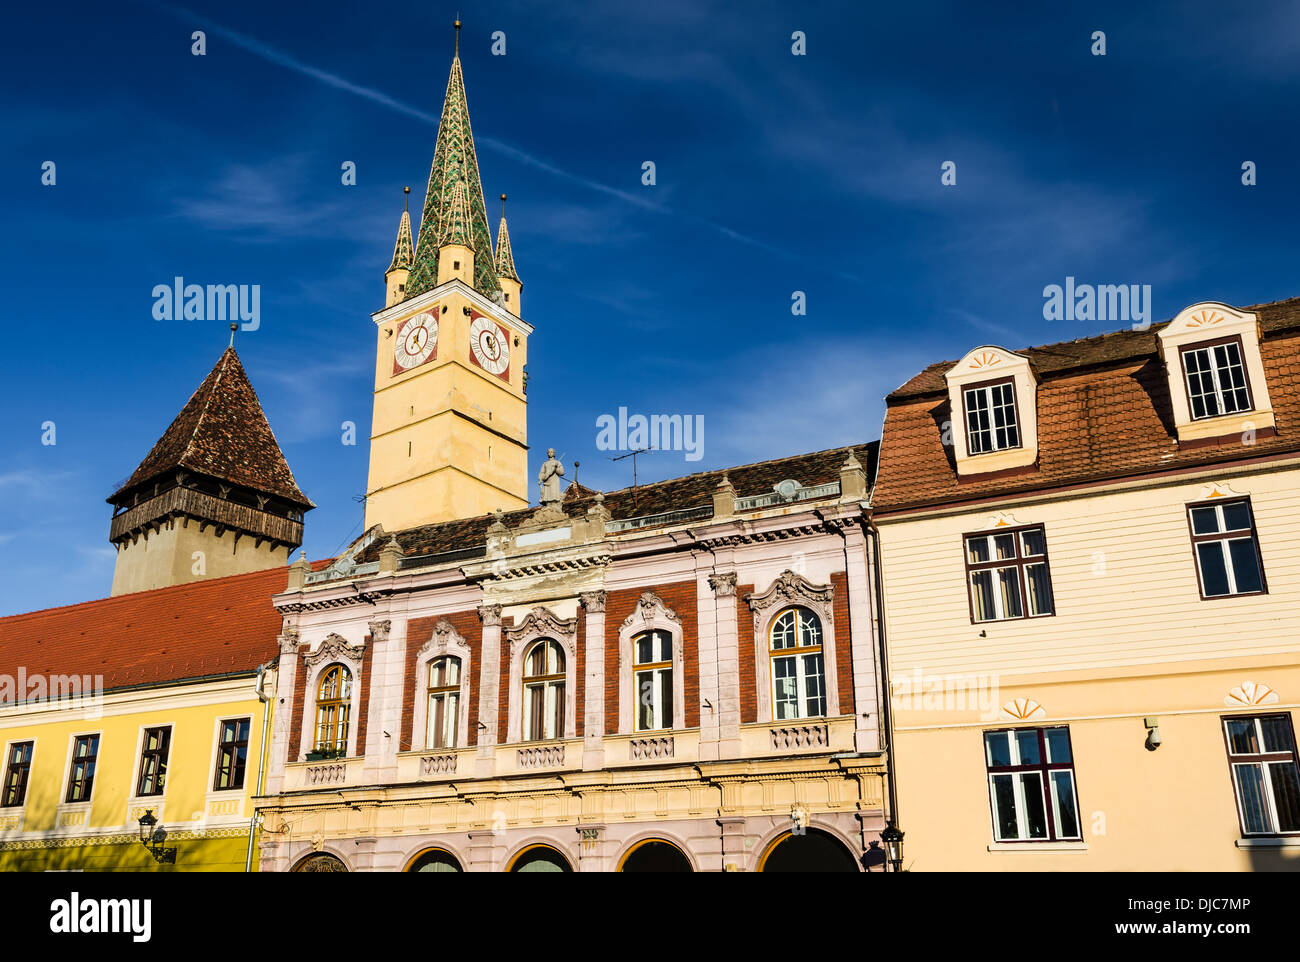 Medias, Transylvania. Eines der am besten erhaltenen historische Zentren in Rumänien. Mittelalterliche Turm der Trompeter. Stockfoto